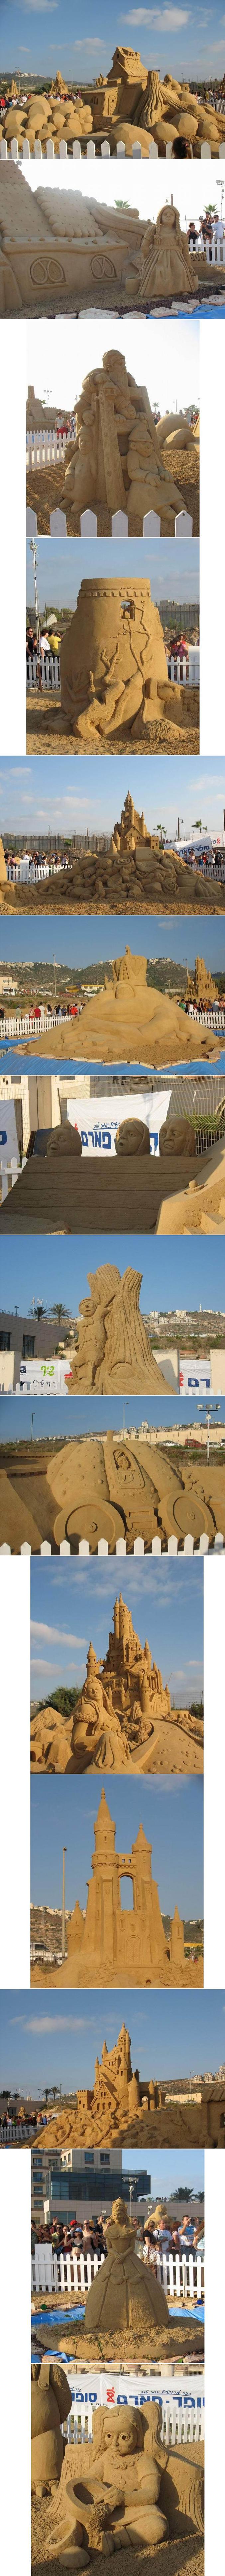 De magnifiques sculptures avec du sable.